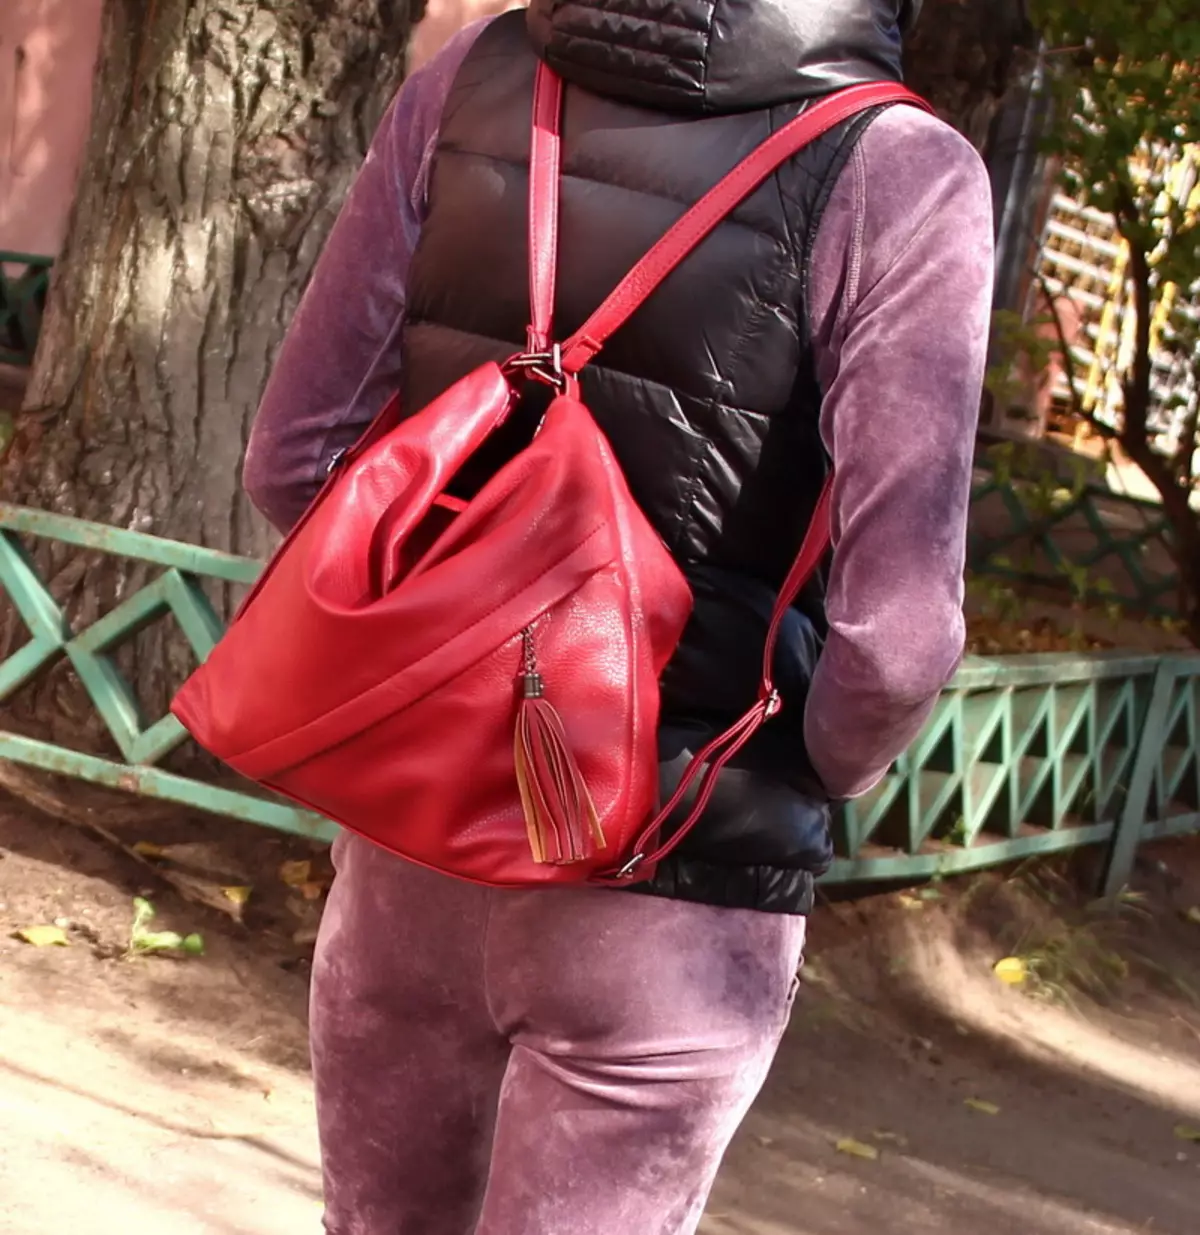 Transformers Backpacks: Kvinders læder rygsæk tasker med to håndtag og øko-træ, Burgund og sort, Urban og Road, andre modeller 2589_27